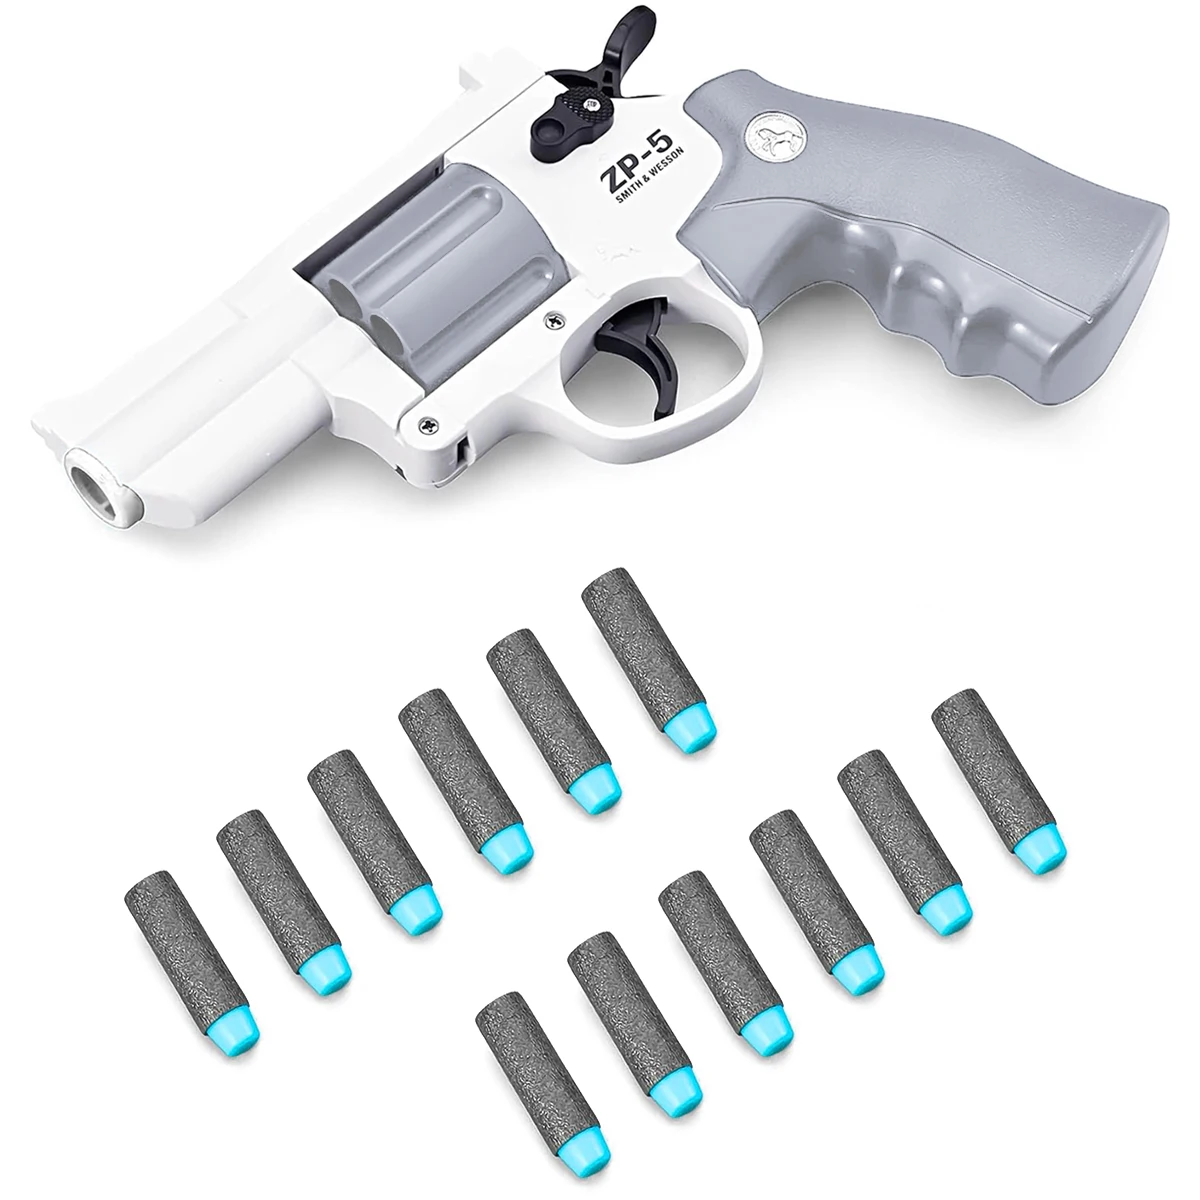 어린이용 ZP5 리볼버 권총 발사기, 슈팅 게임 선물, 안전한 장난감 총, 드롭쉬핑